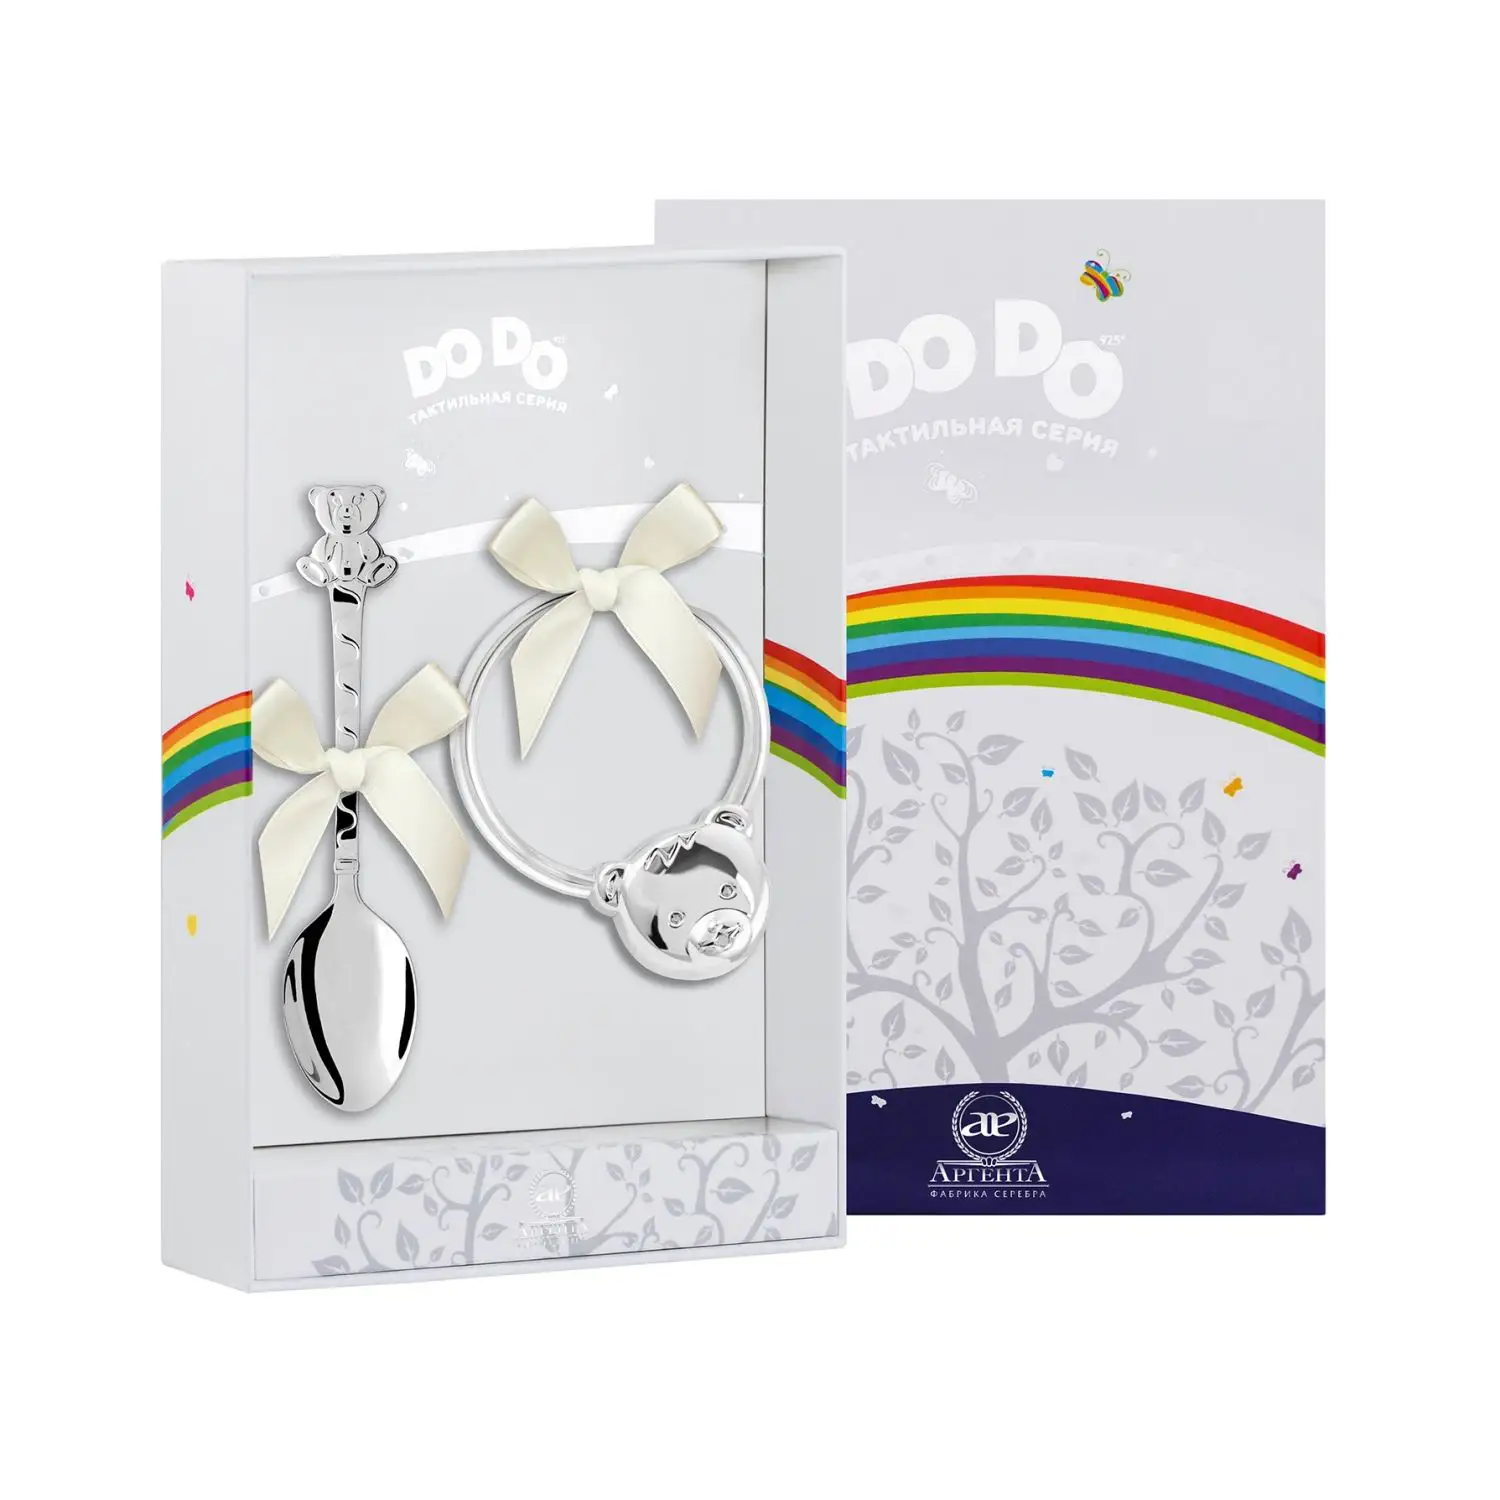 Набор для малышей DODO Мишка: ложка и погремушка (Серебро 925) набор для малышей dodo медвежонок ложка и погремушка малиновый серебро 925